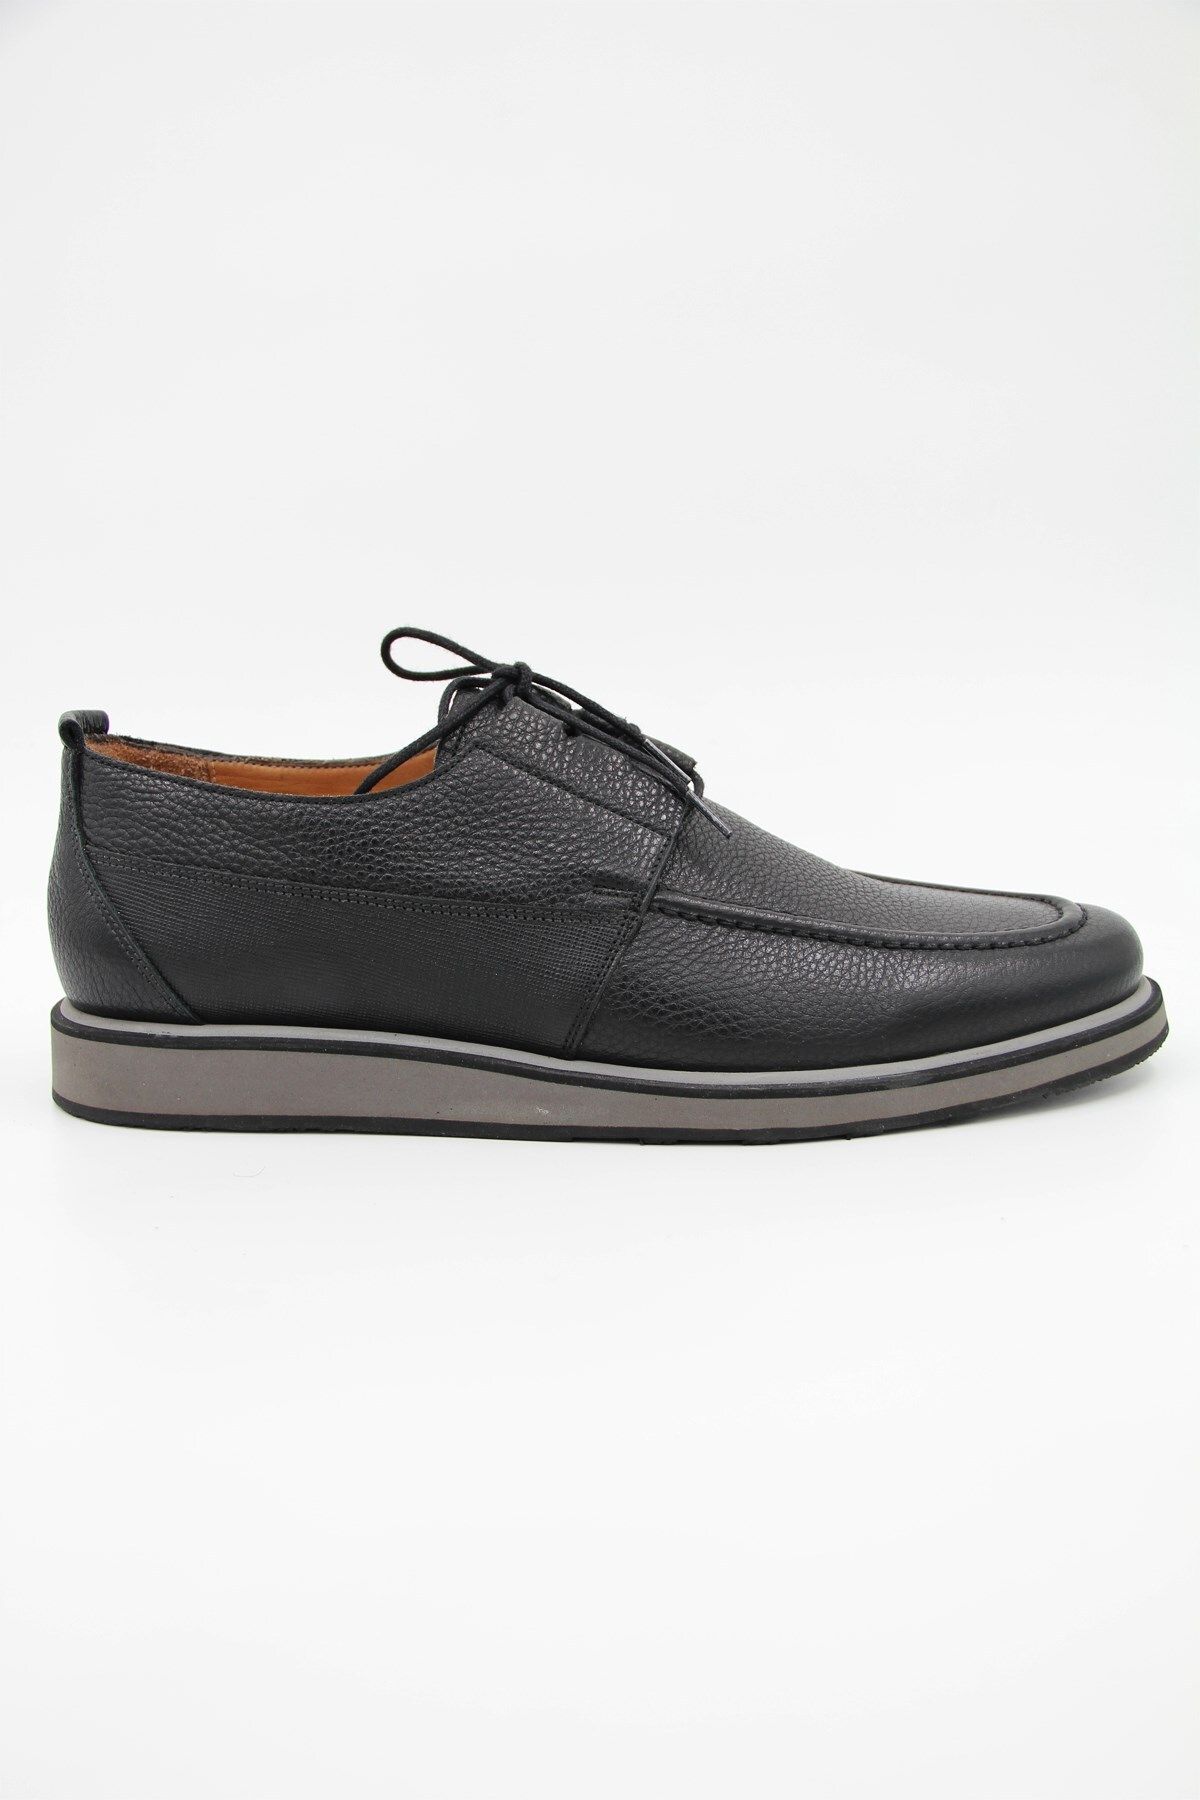 Nevzat Onay 9359-548 Erkek Klasik Ayakkabı - Siyah